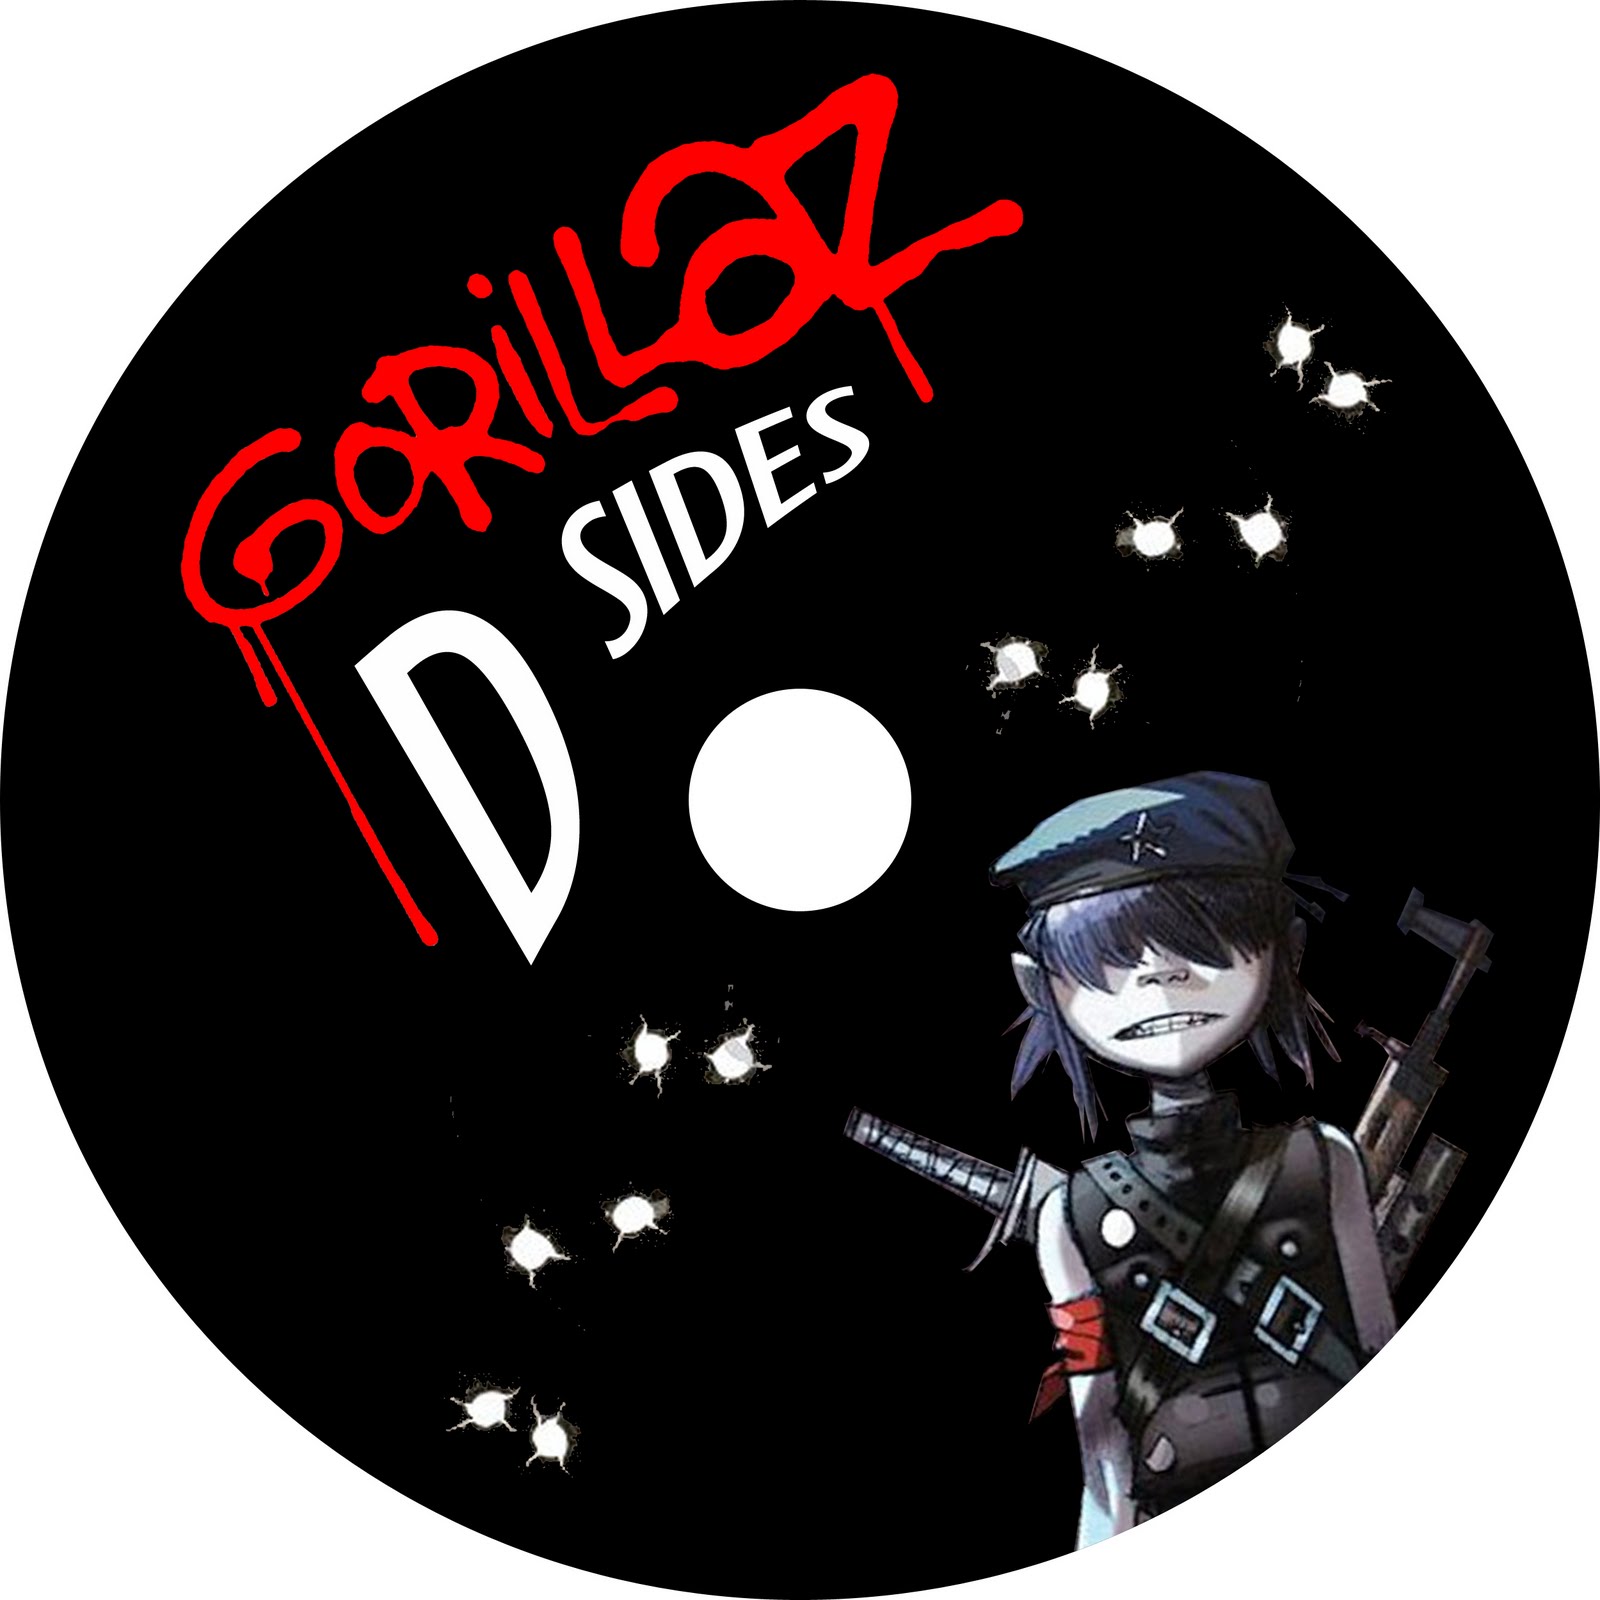 Gorillaz- D-Sides CD 1 Full CD - YouTube